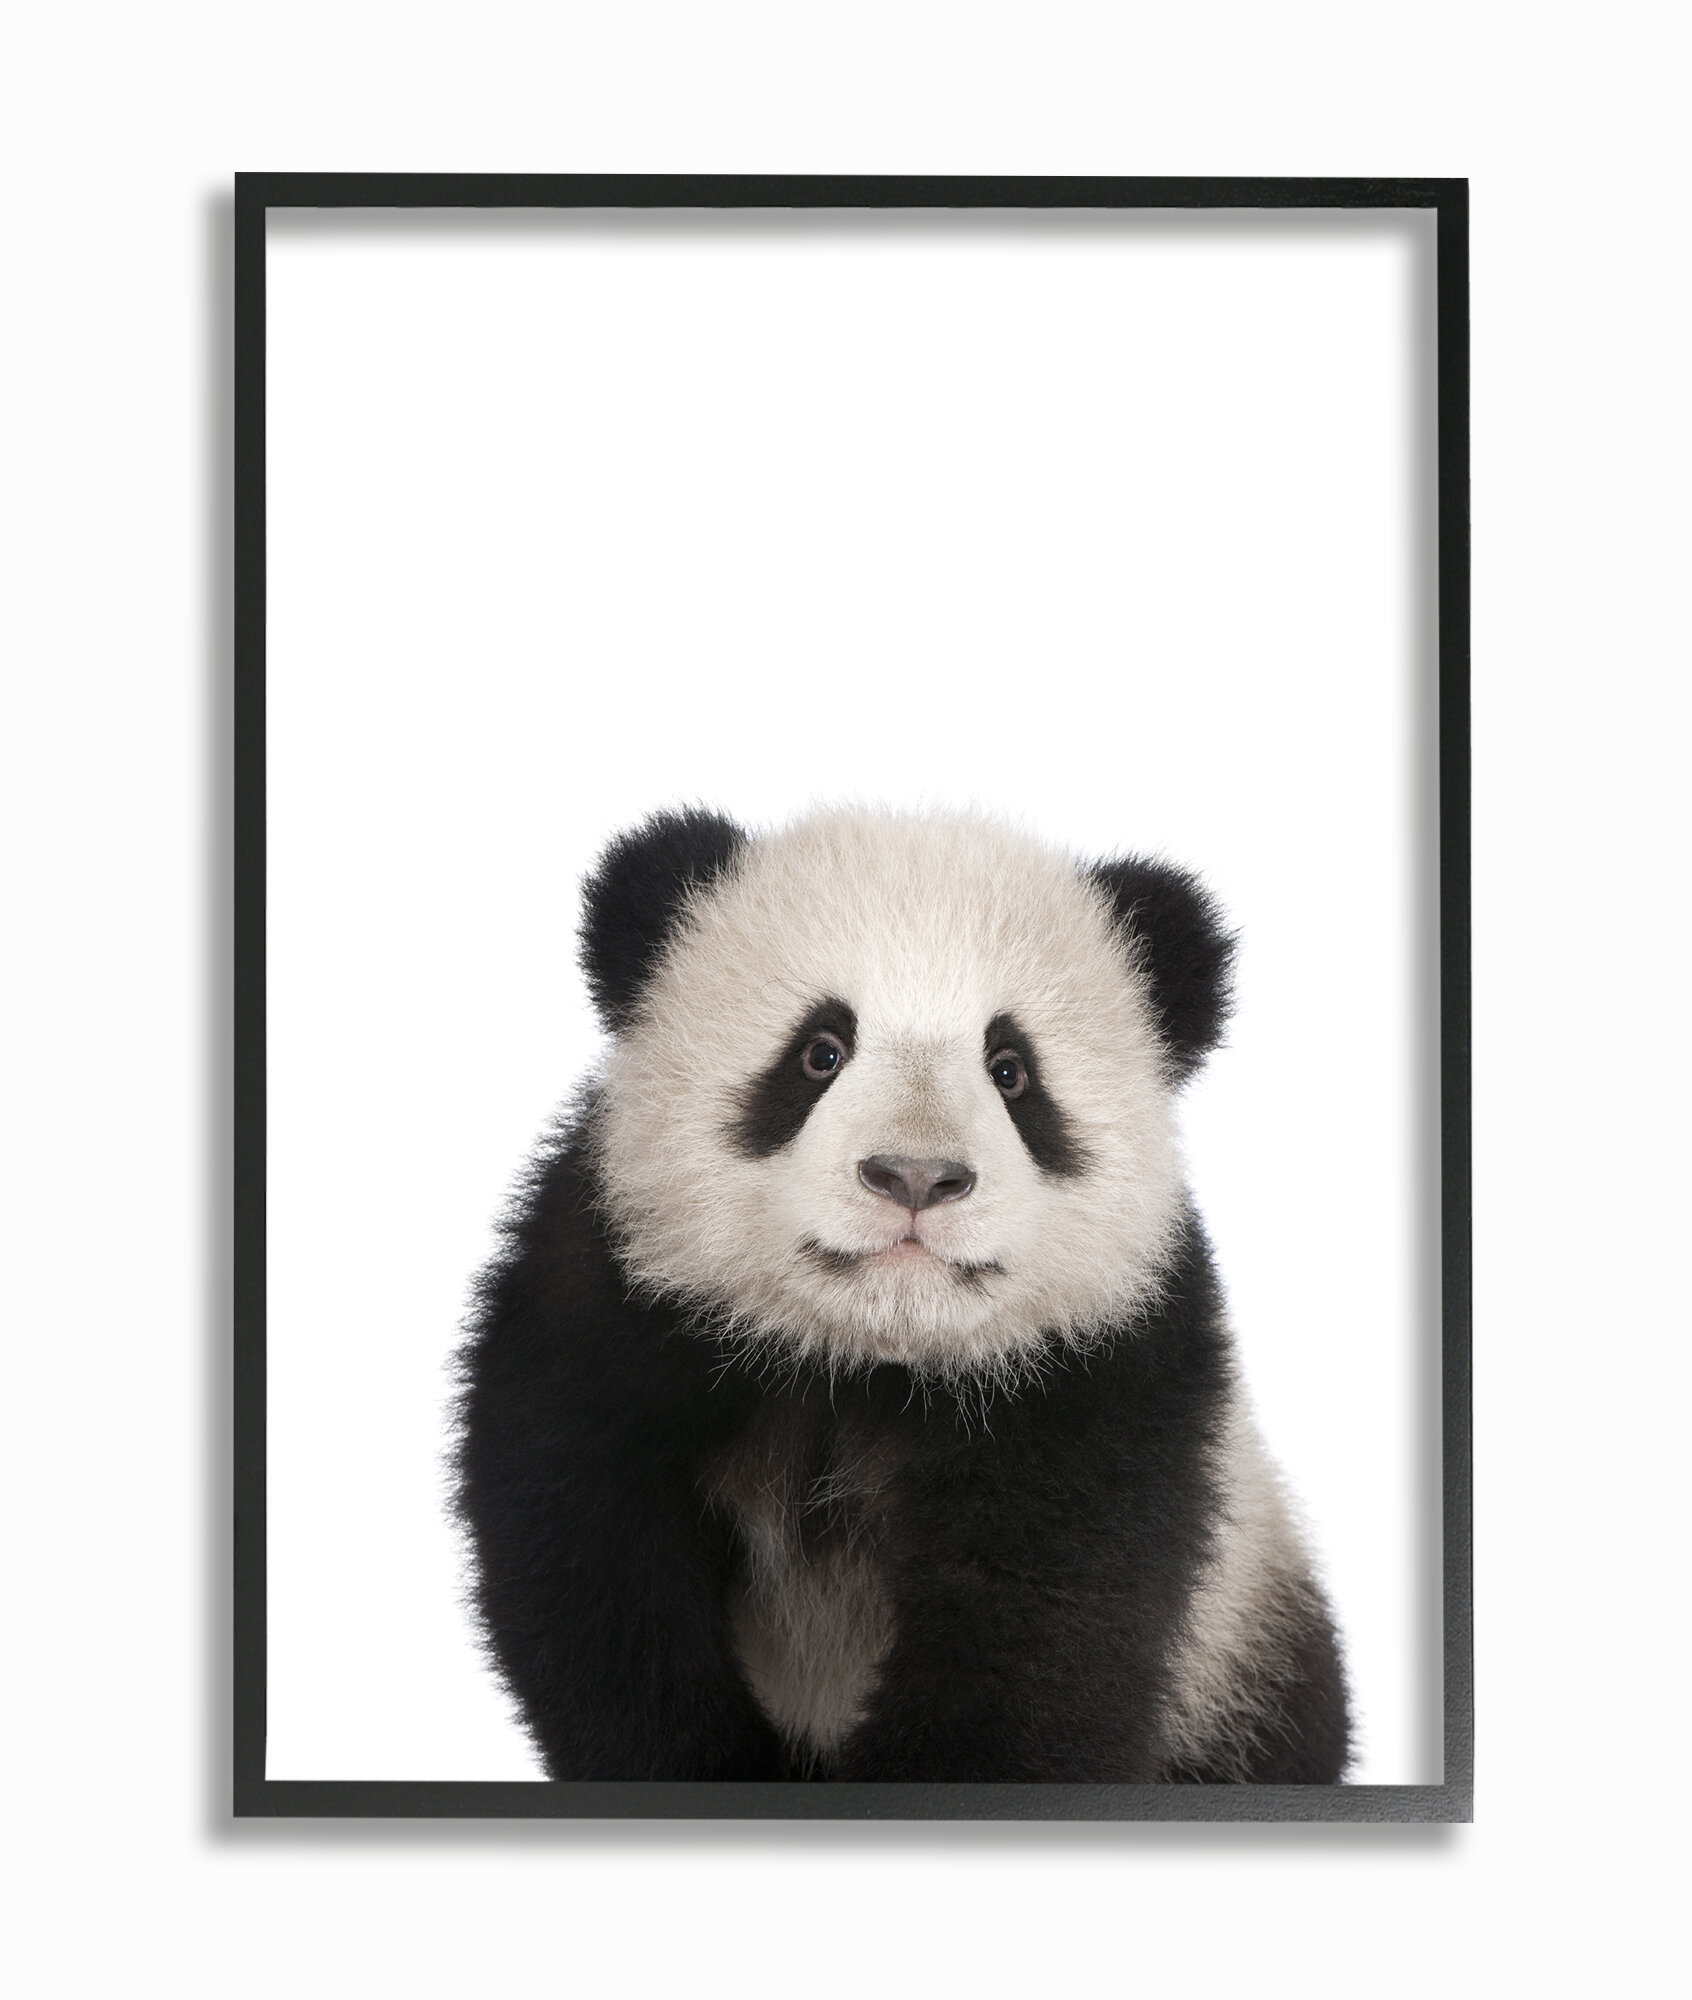 Animal studio. Панда на прозрачном фоне. Панда без фона. Панда в снегу. Яркие постеры Панда.